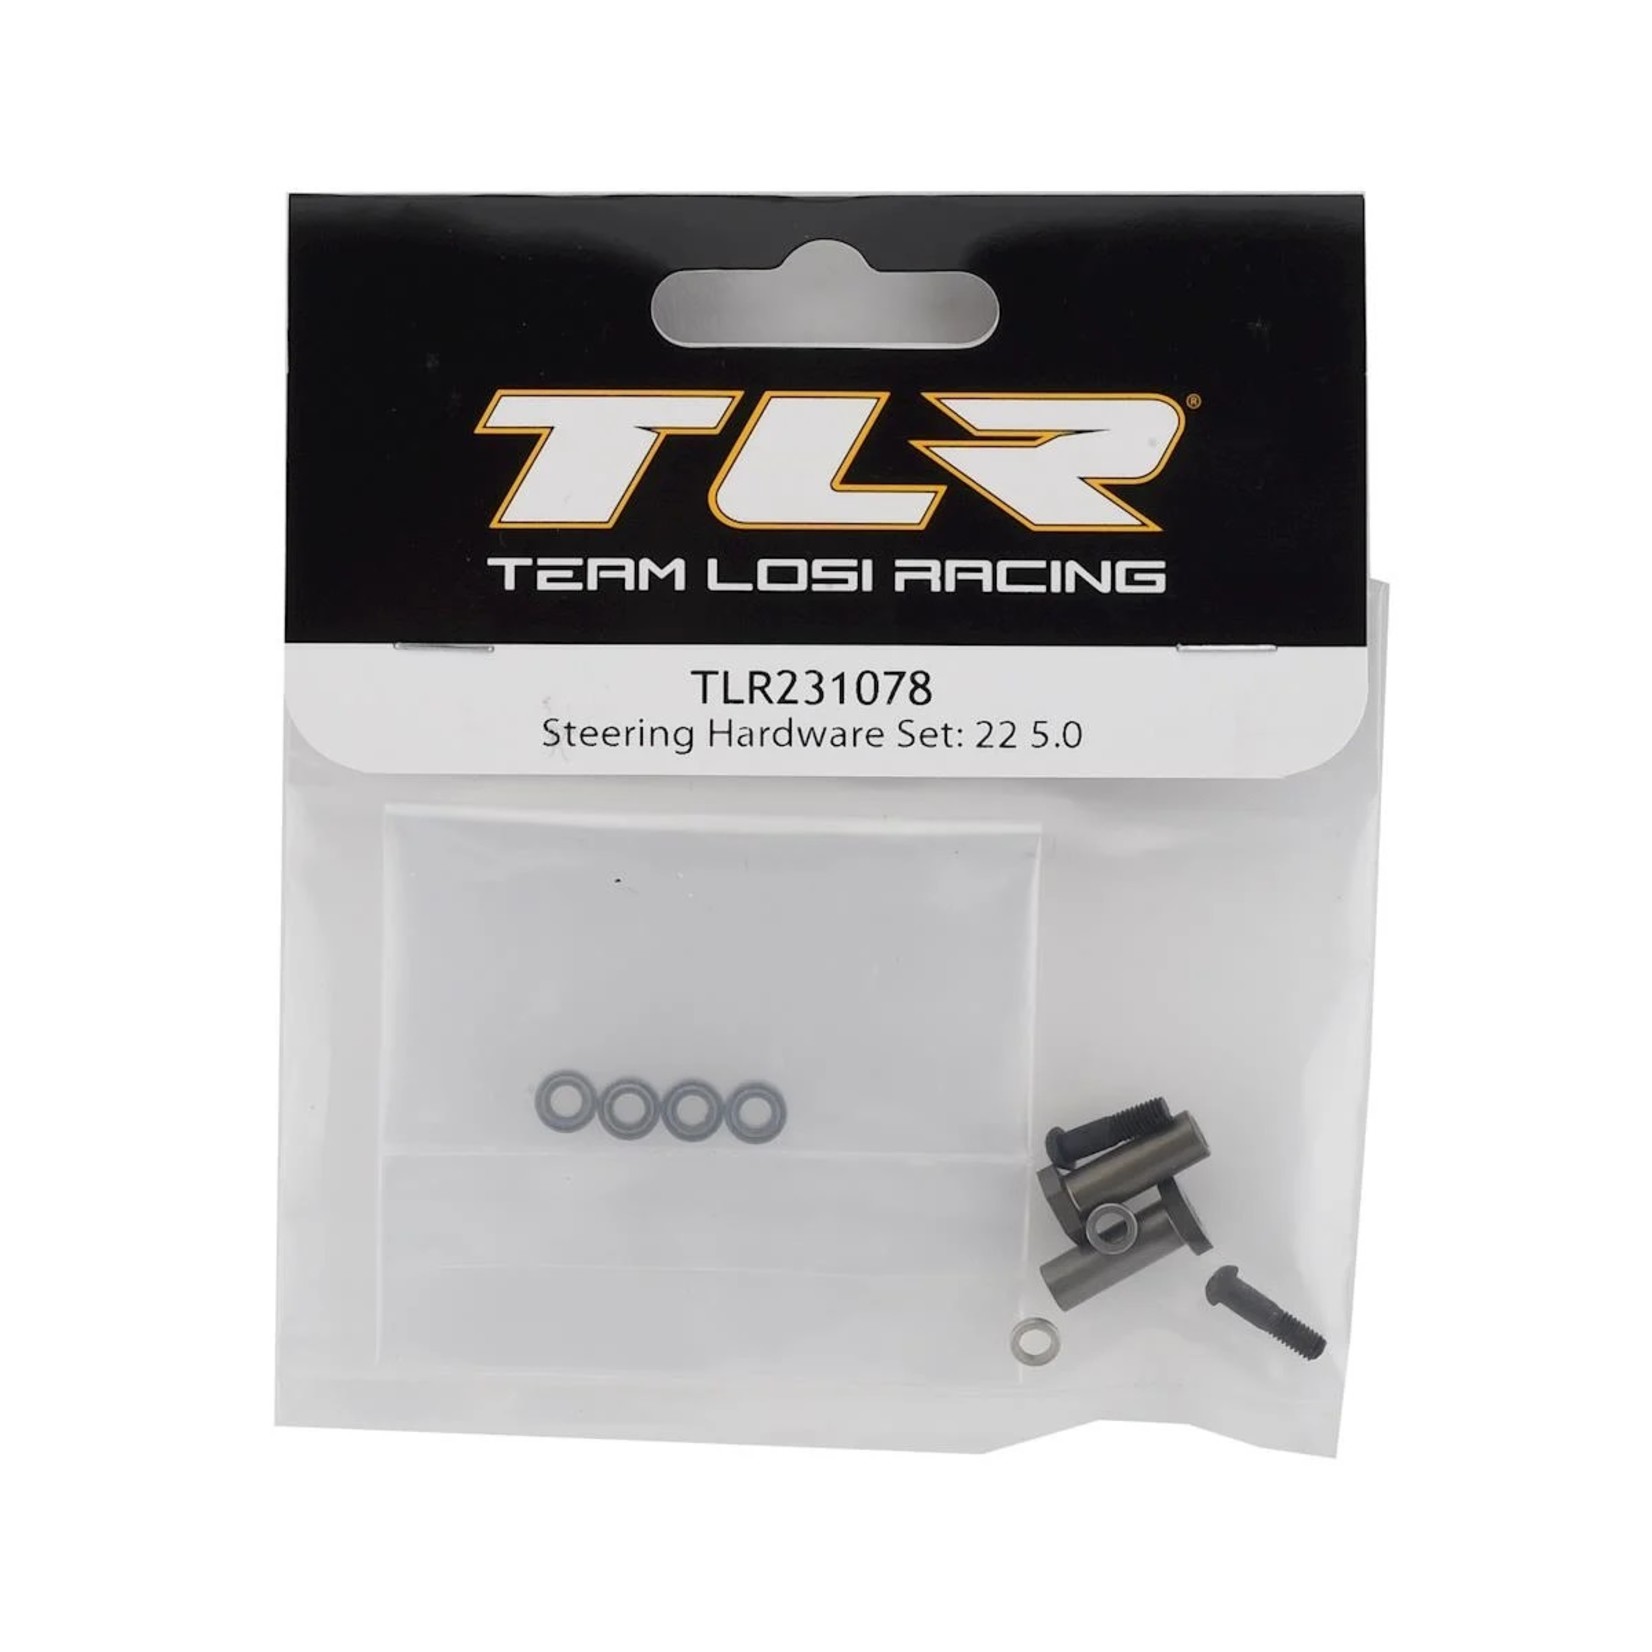 TLR Team Losi Racing 22 5.0 Steering Hardware Set #TLR231078